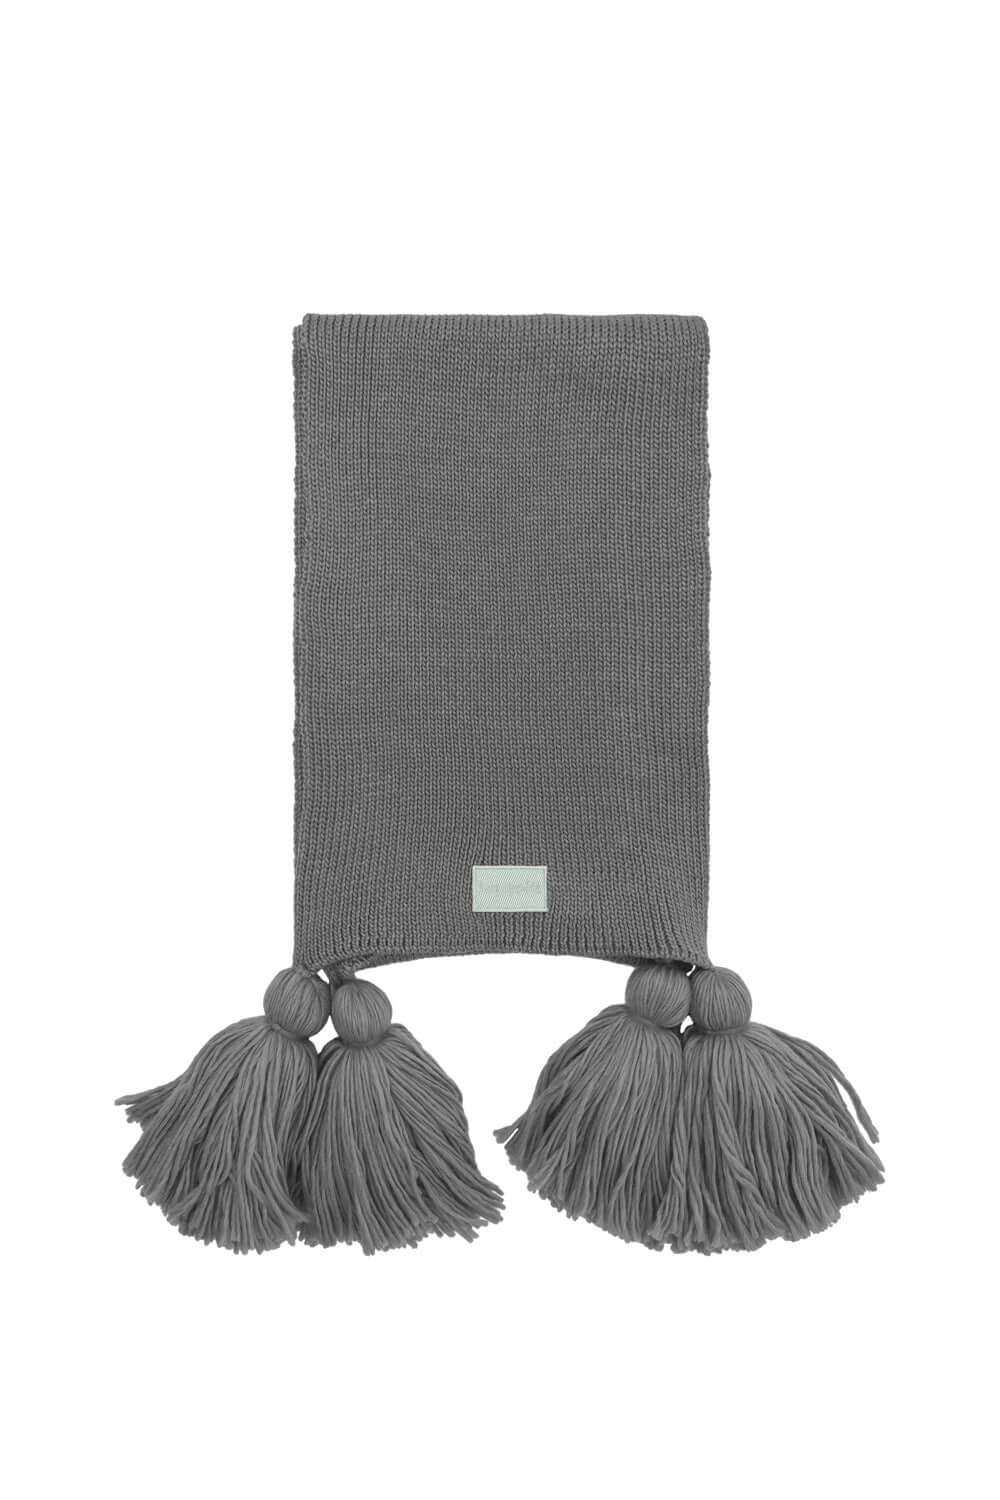 Ellis scarf in grey knit